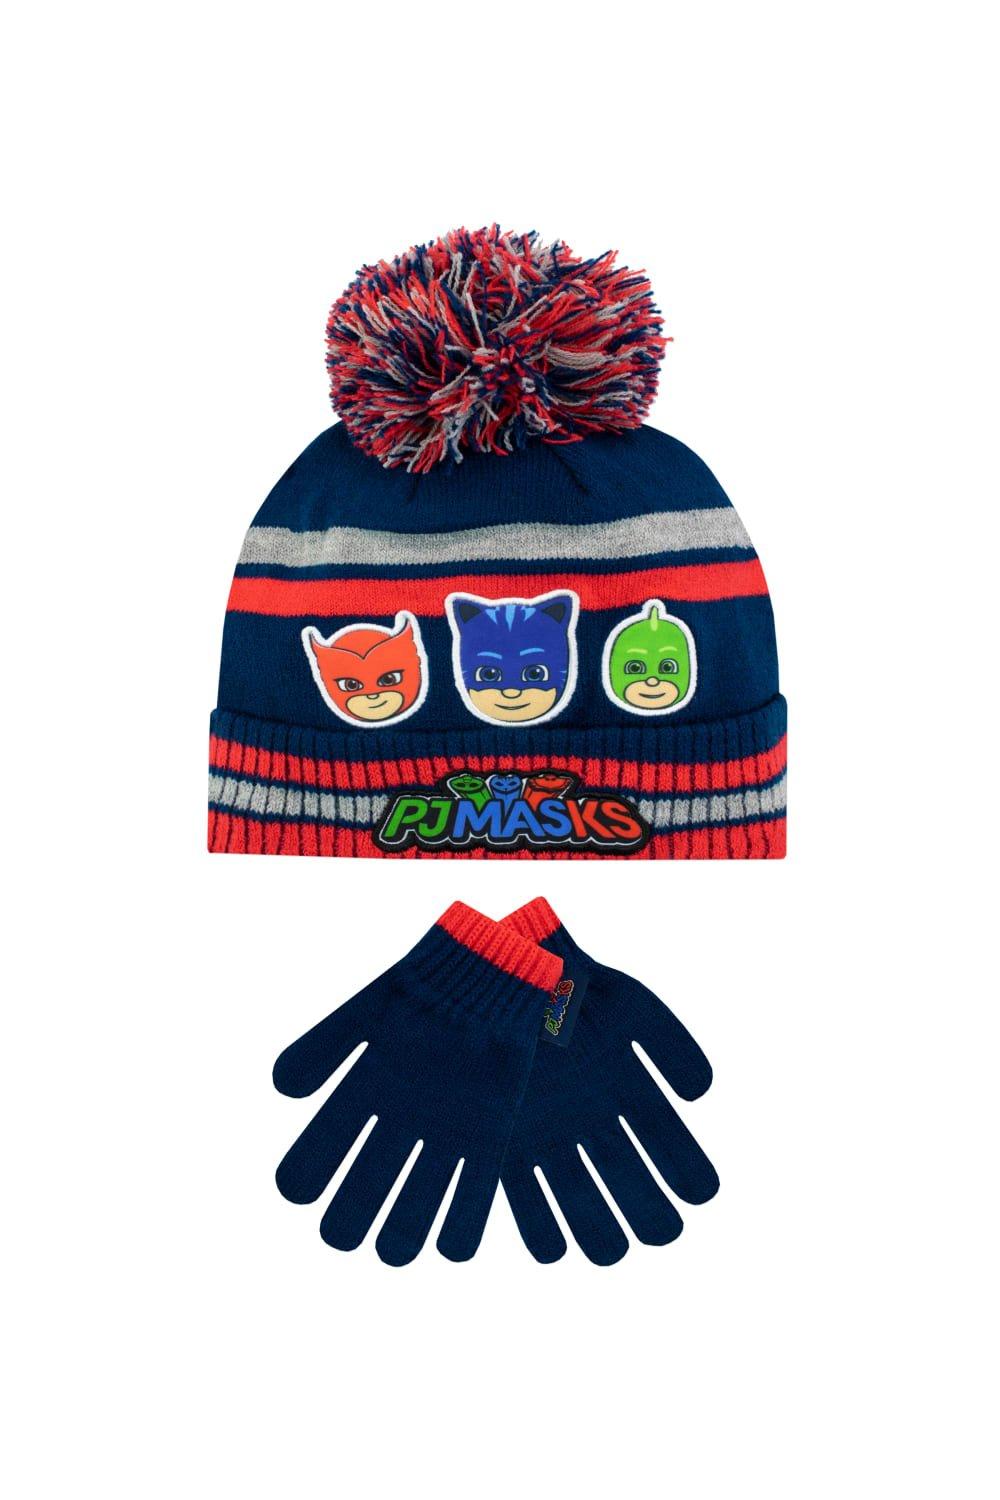 Детский комплект шапки и перчаток PJ Masks, синий шапка шарф комплект с помпоном мультяшная детская зимняя шапка для мальчиков и девочек детская теплая трикотажная детская шапка